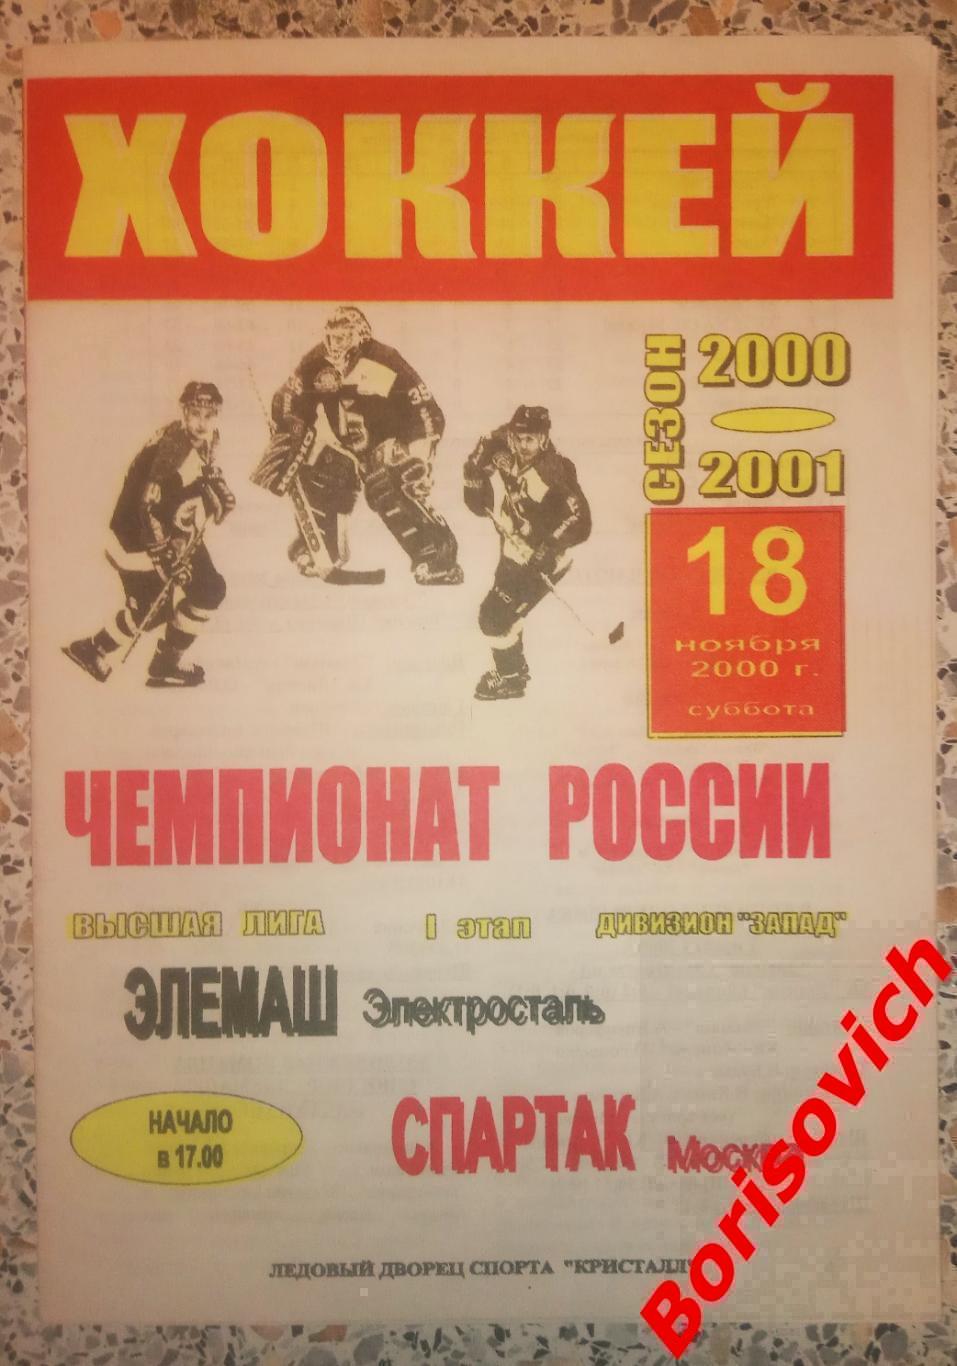 Элемаш Электросталь - Спартак Москва 18-11-2000 ОБМЕН